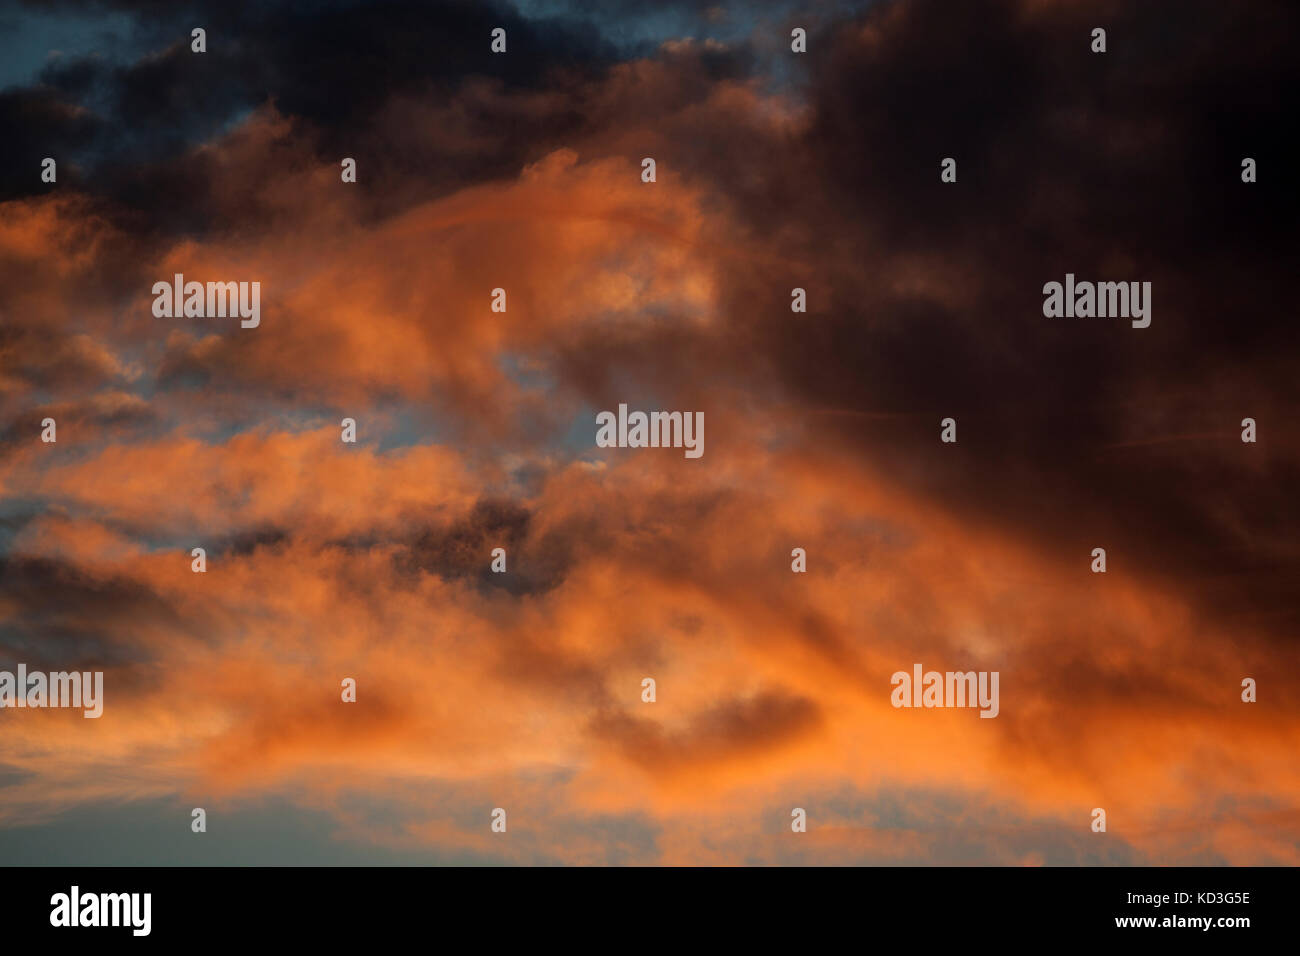 Les nuages, ciel nuageux orange après le coucher du soleil, lumière du soir, Angra do Heroismo, l'île de Terceira, Açores, Portugal Banque D'Images